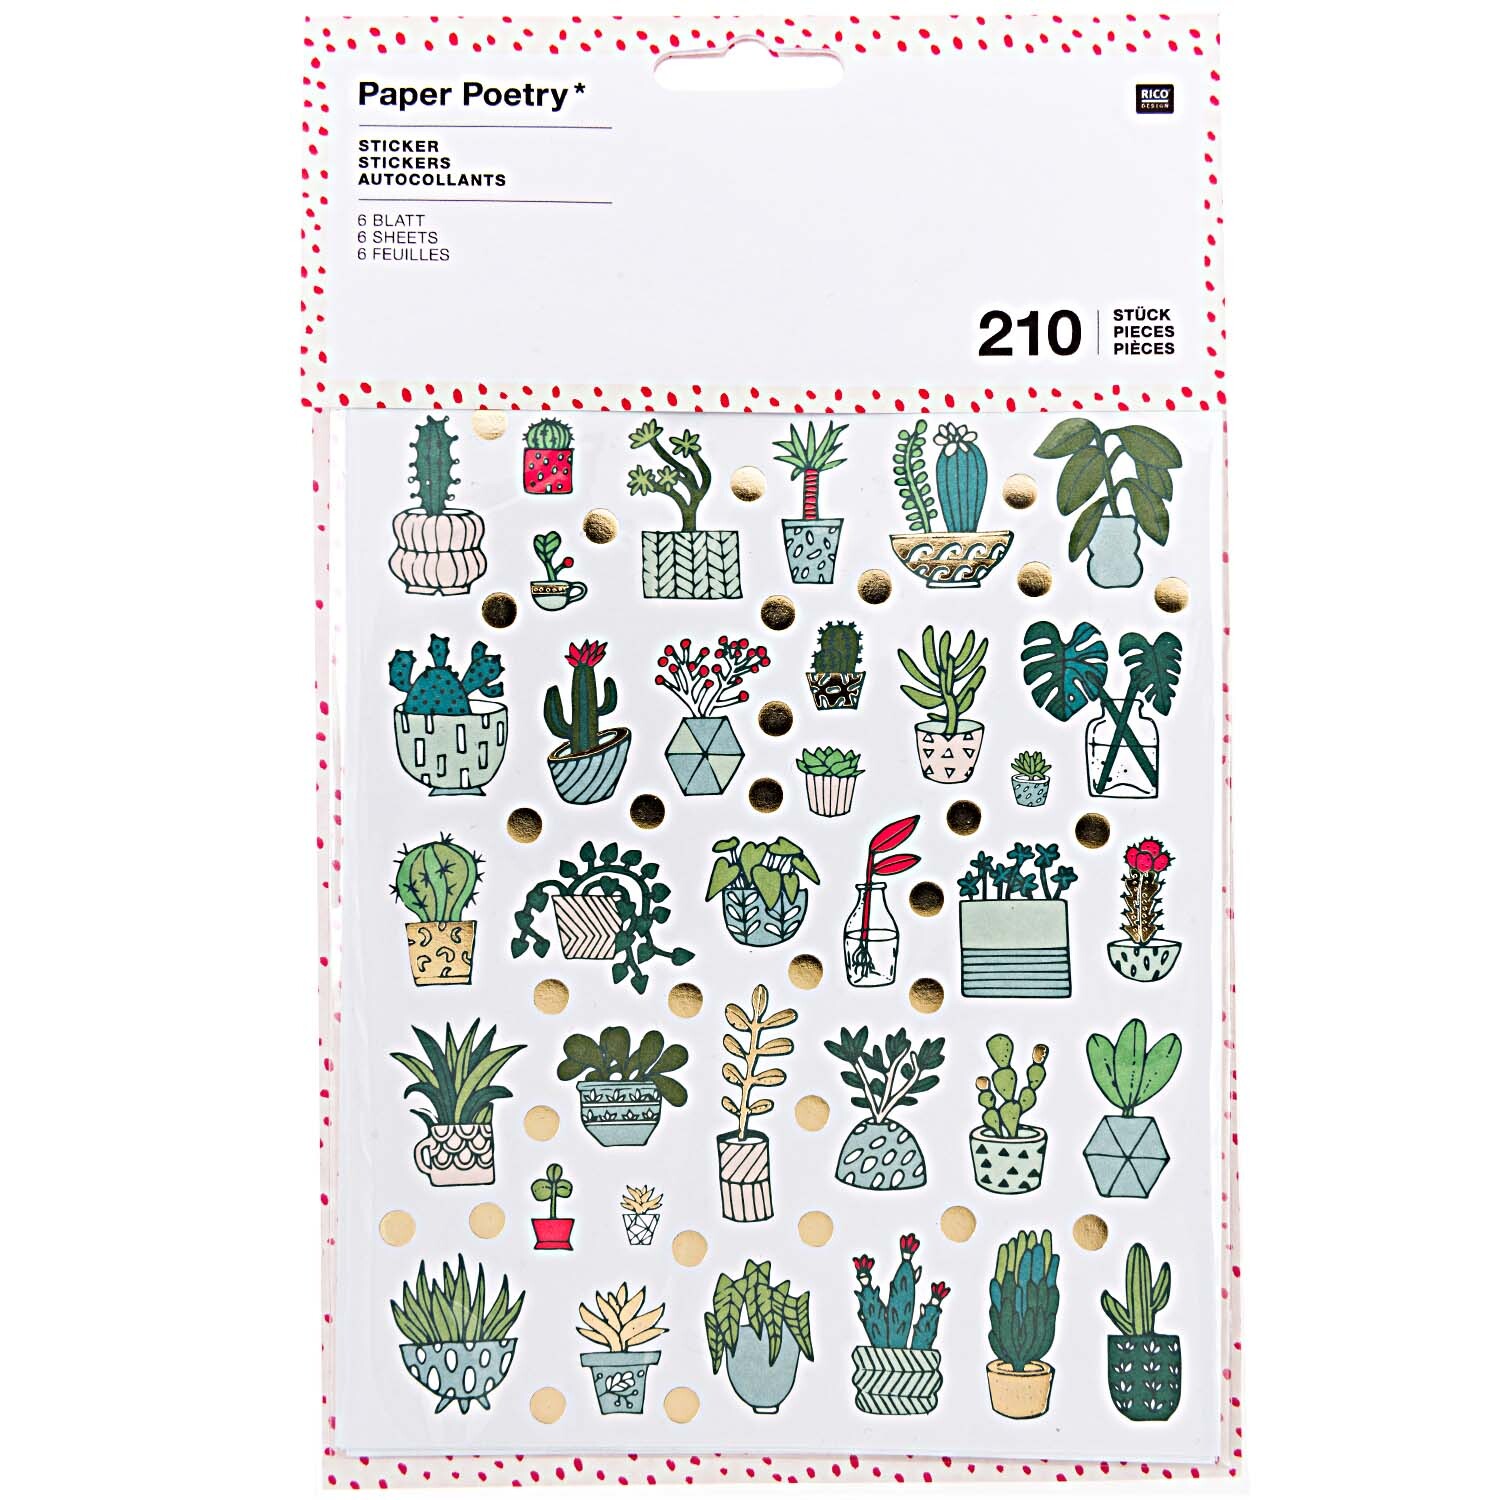 Paper Poetry Sticker Hygge Plants 6 Blatt